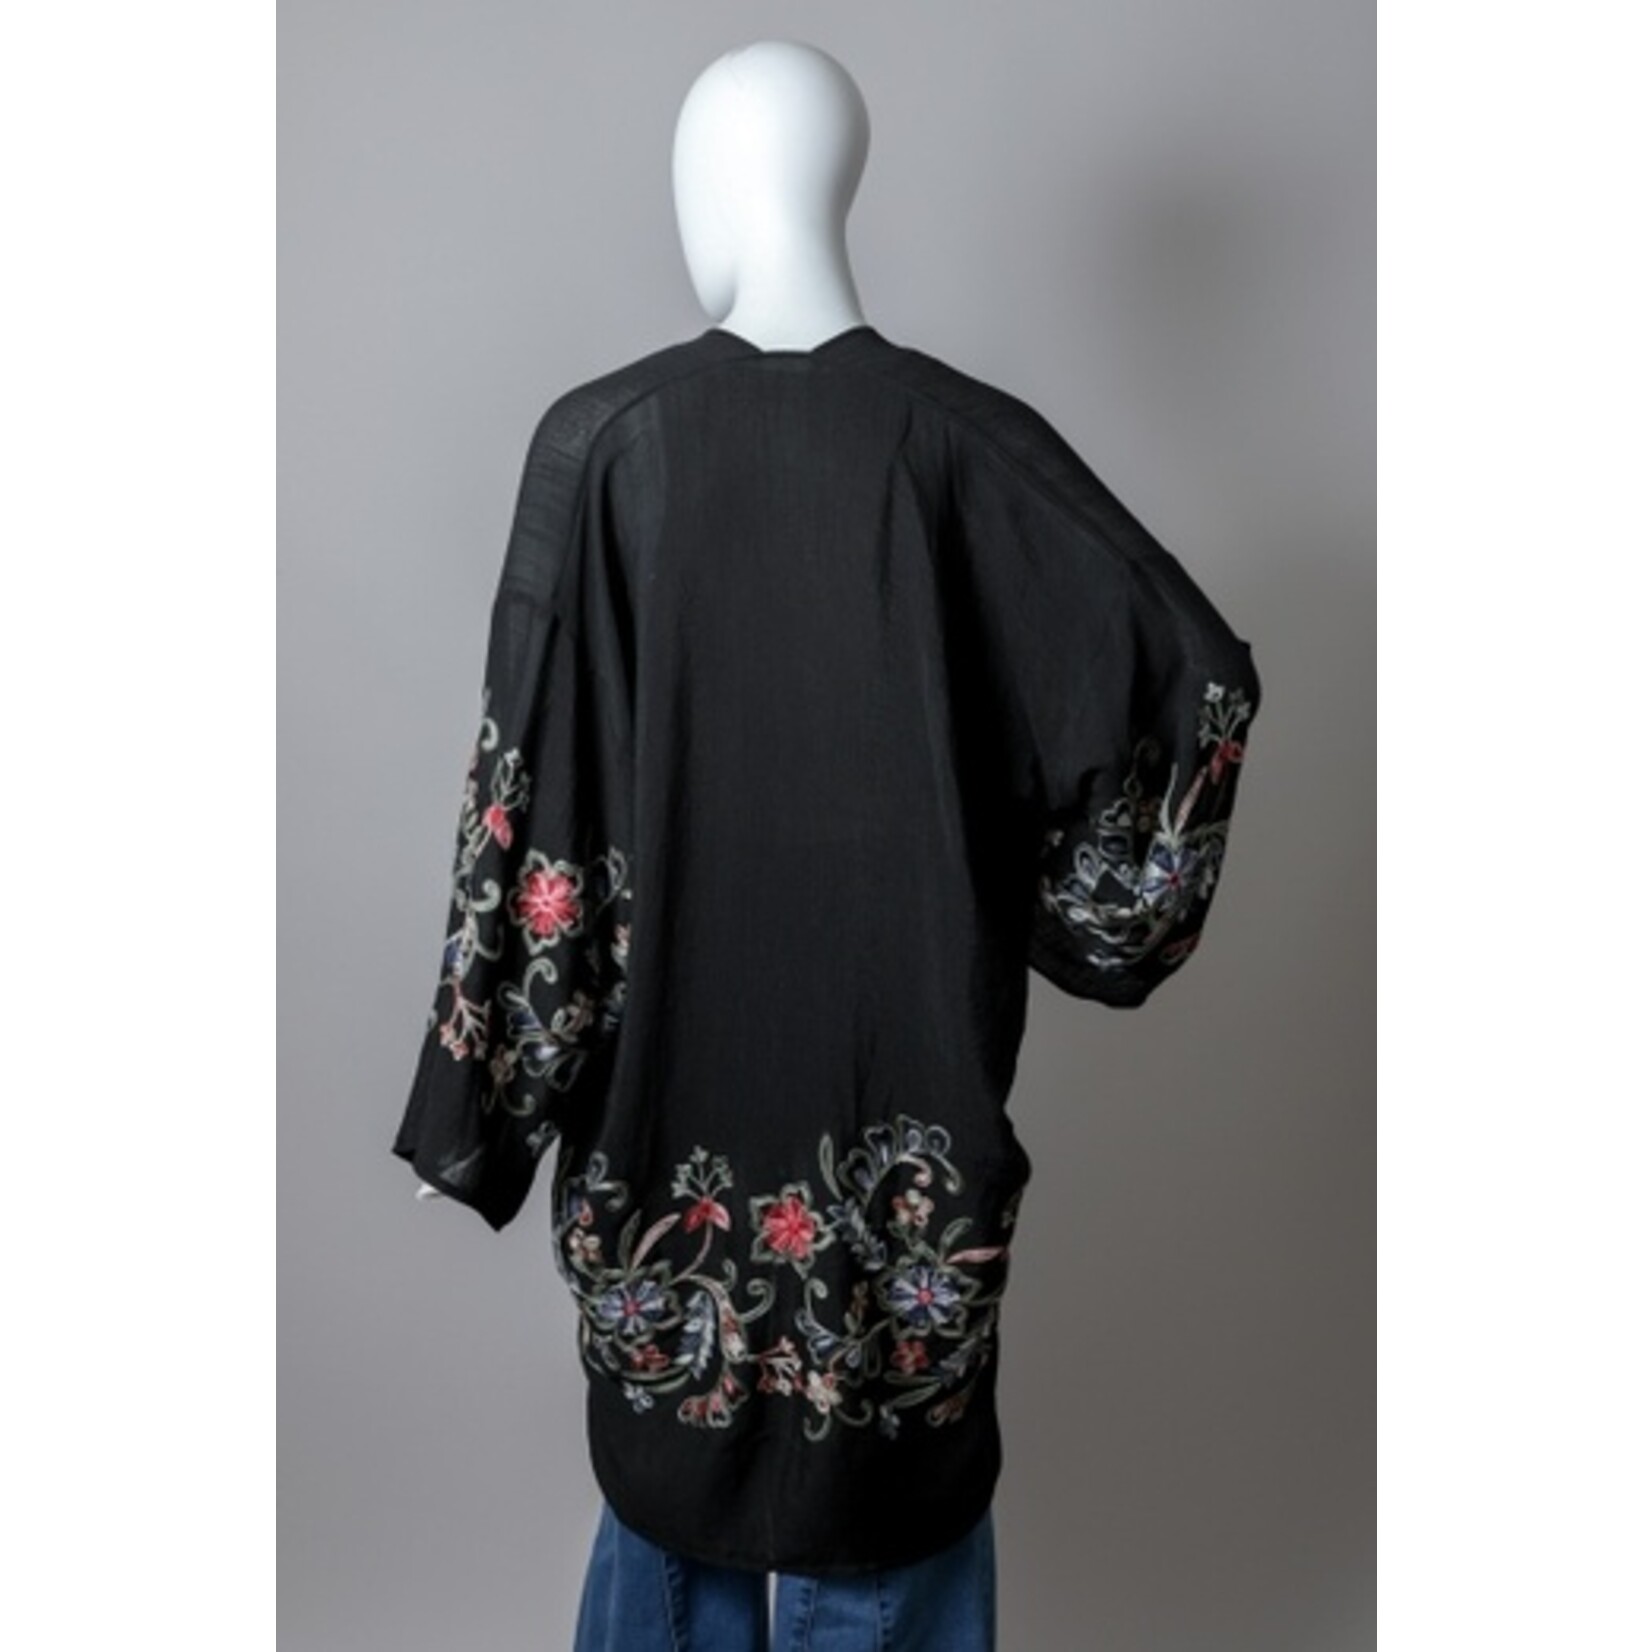 Leto Accessories Leto Accessories Long Floral Kimono-Black